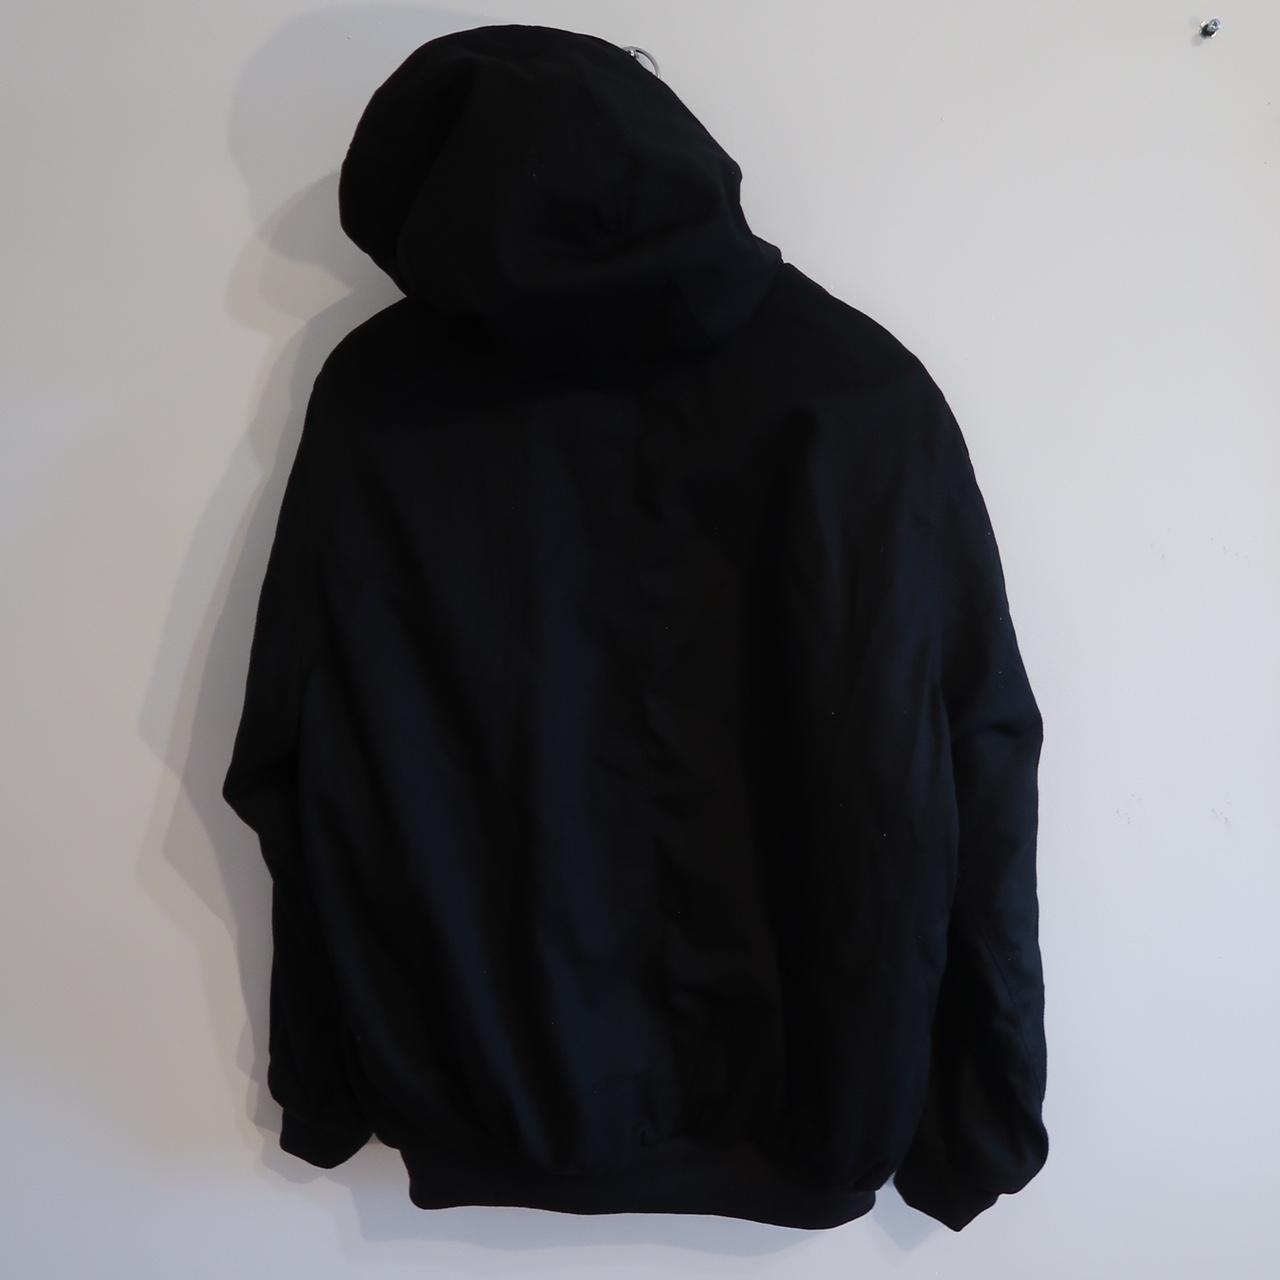 Carhartt reworked og active jacket in black In... - Depop